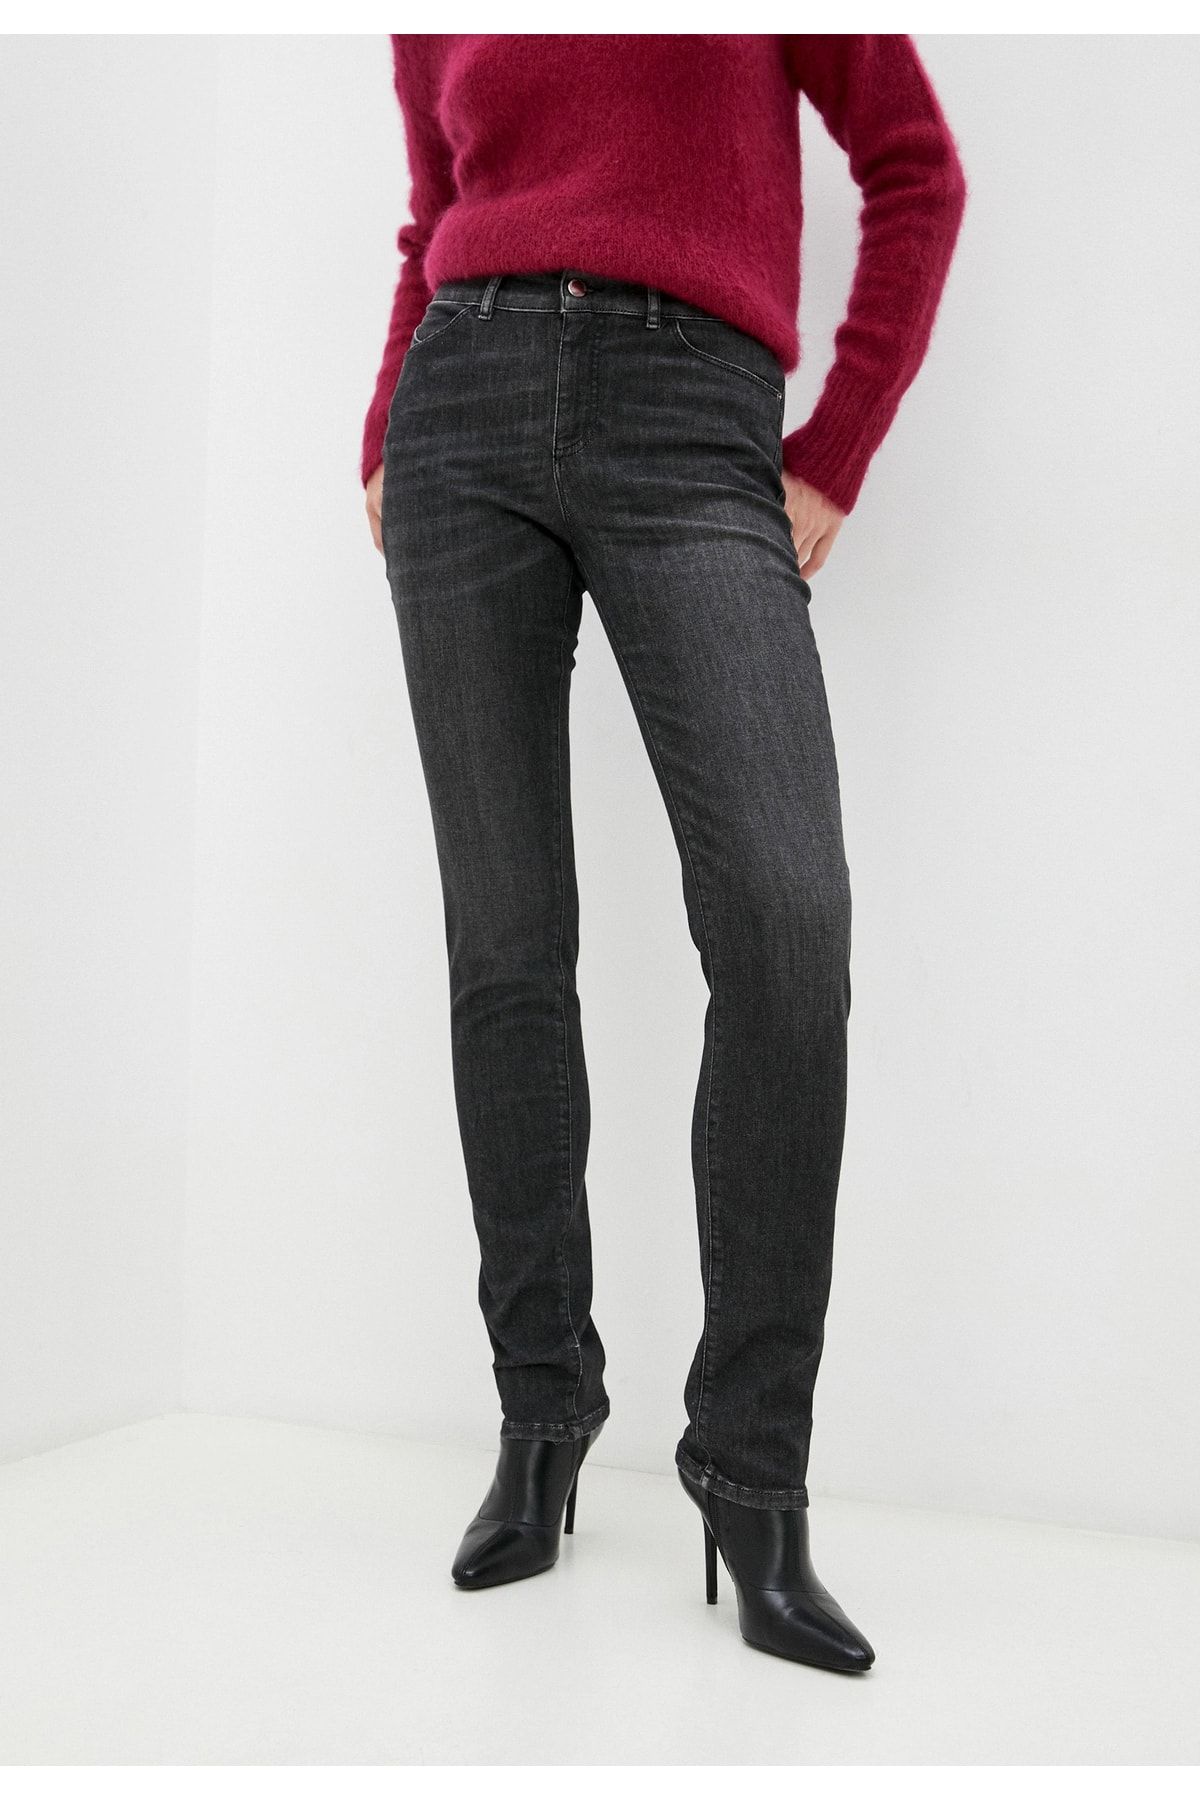 Emporio Armani Kadın Yüksek Bel Slim Rahat Jeans 6k2j18 2dı7z-grı